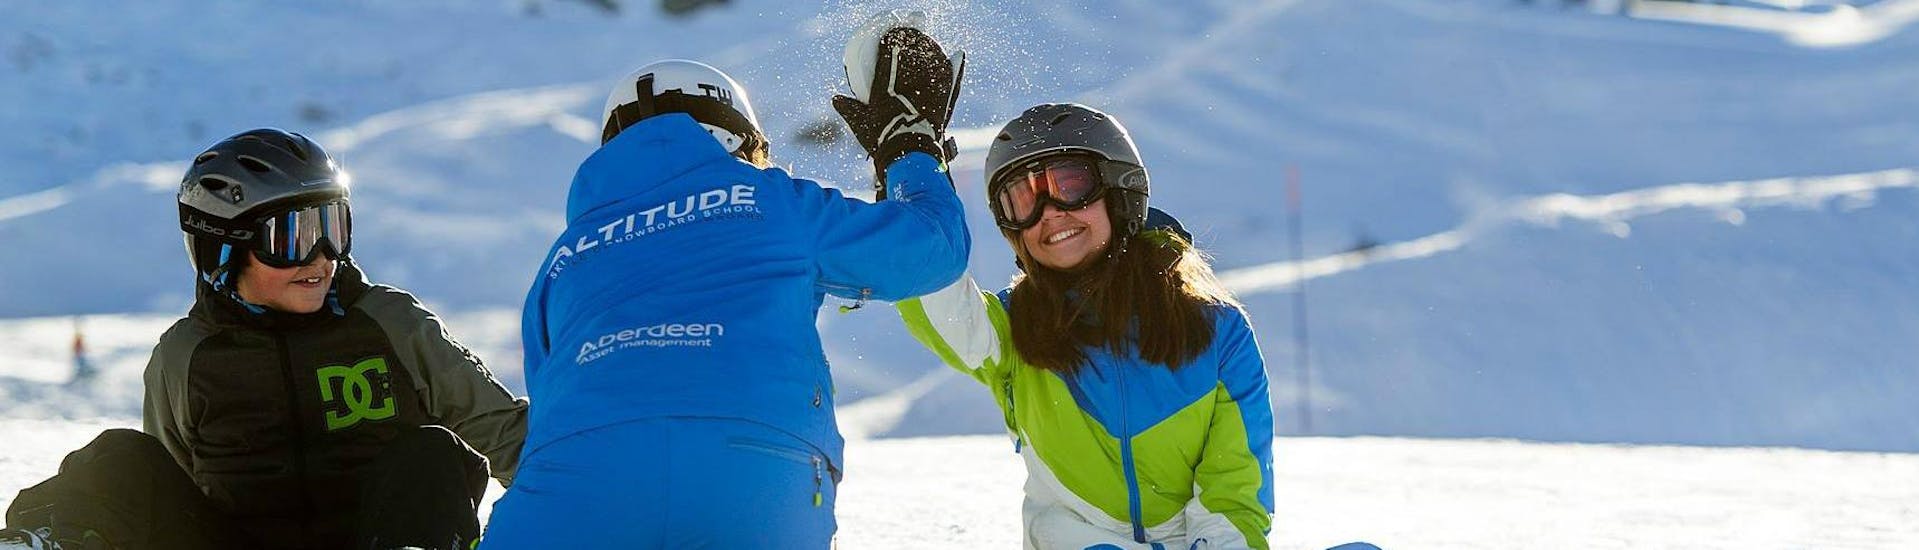 Una instructora de snowboard choca los cinco con su alumno durante las clases particulares de snowboard para niños y adultos - Todos los niveles con Altitude Ski School Zermatt.